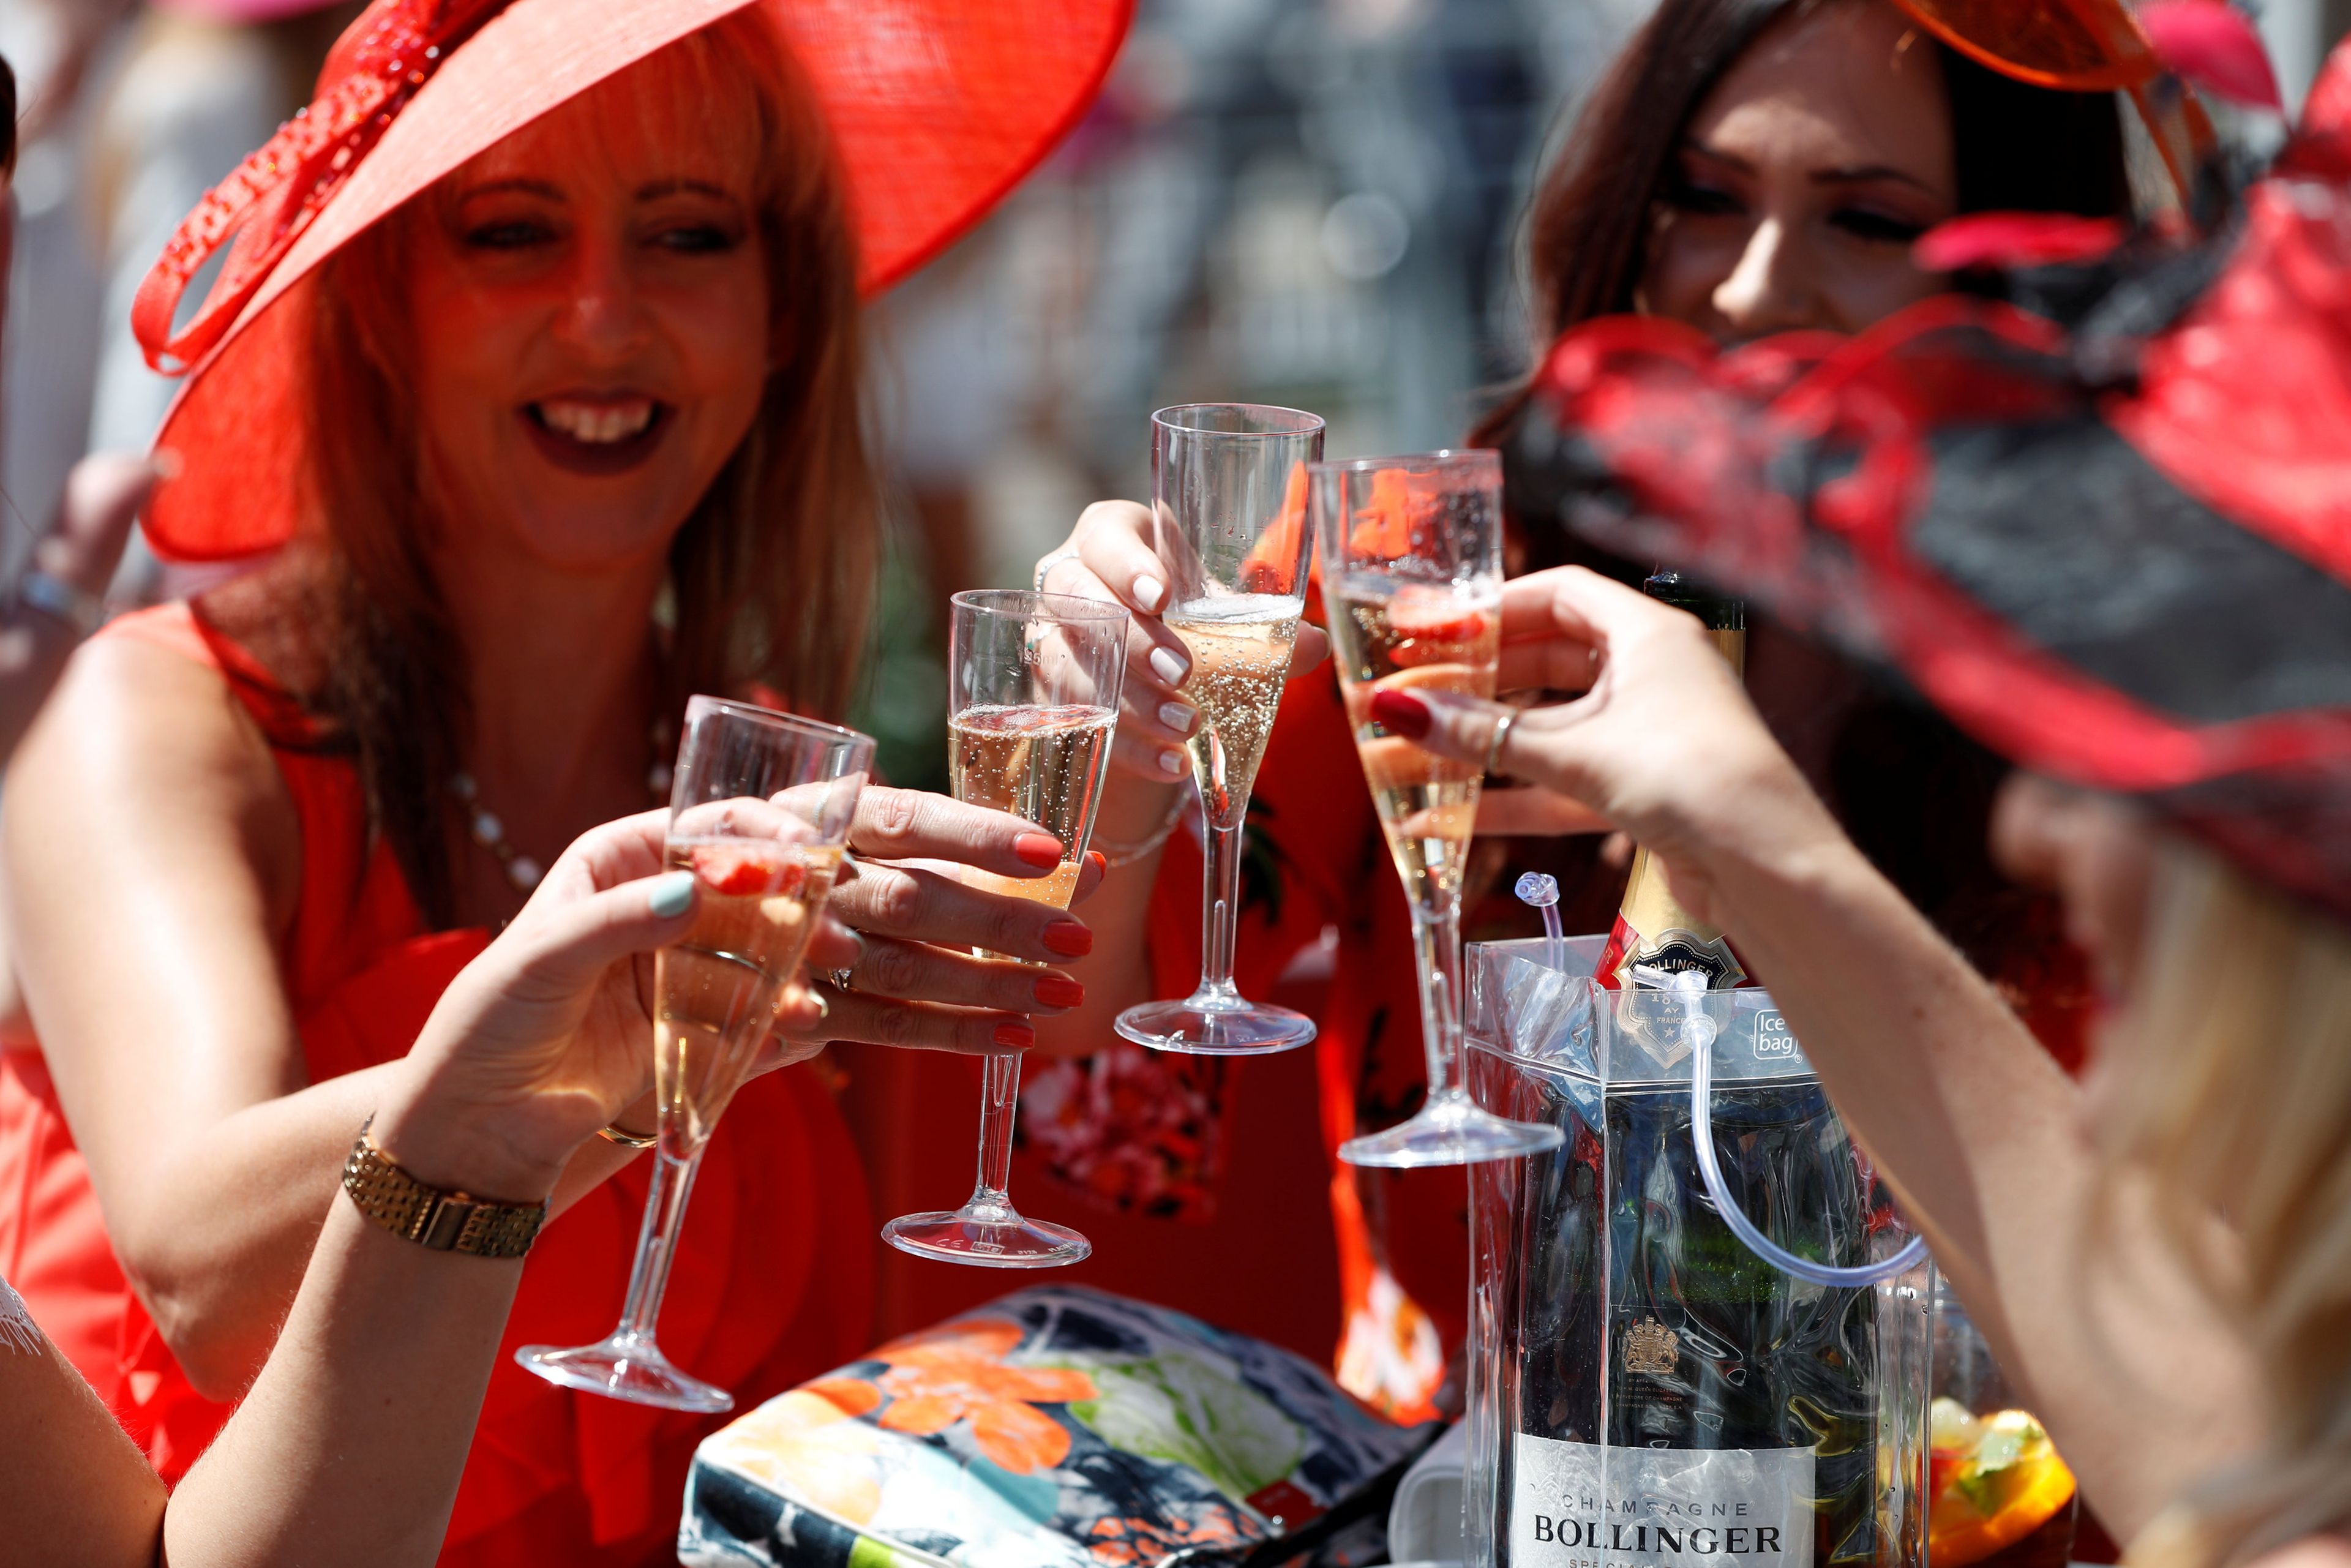 En imagen, mujeres brindando con champán.